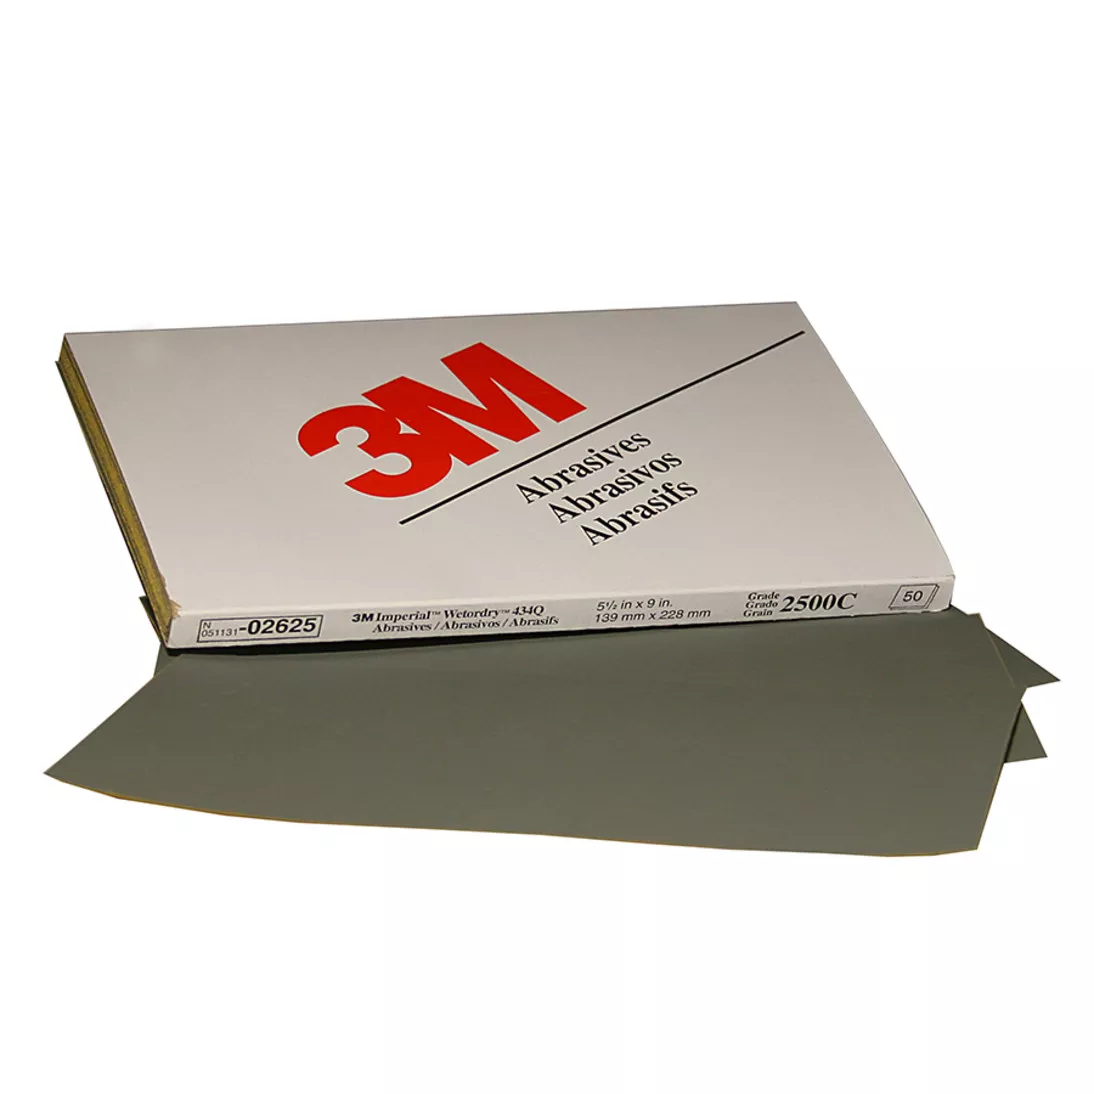 3M™ Wetordry™ Abrasive Sheet, 02625, 2500, heavy duty, 5 1/2 in x 9 in,
50 sheets per carton, 5 cartons per case